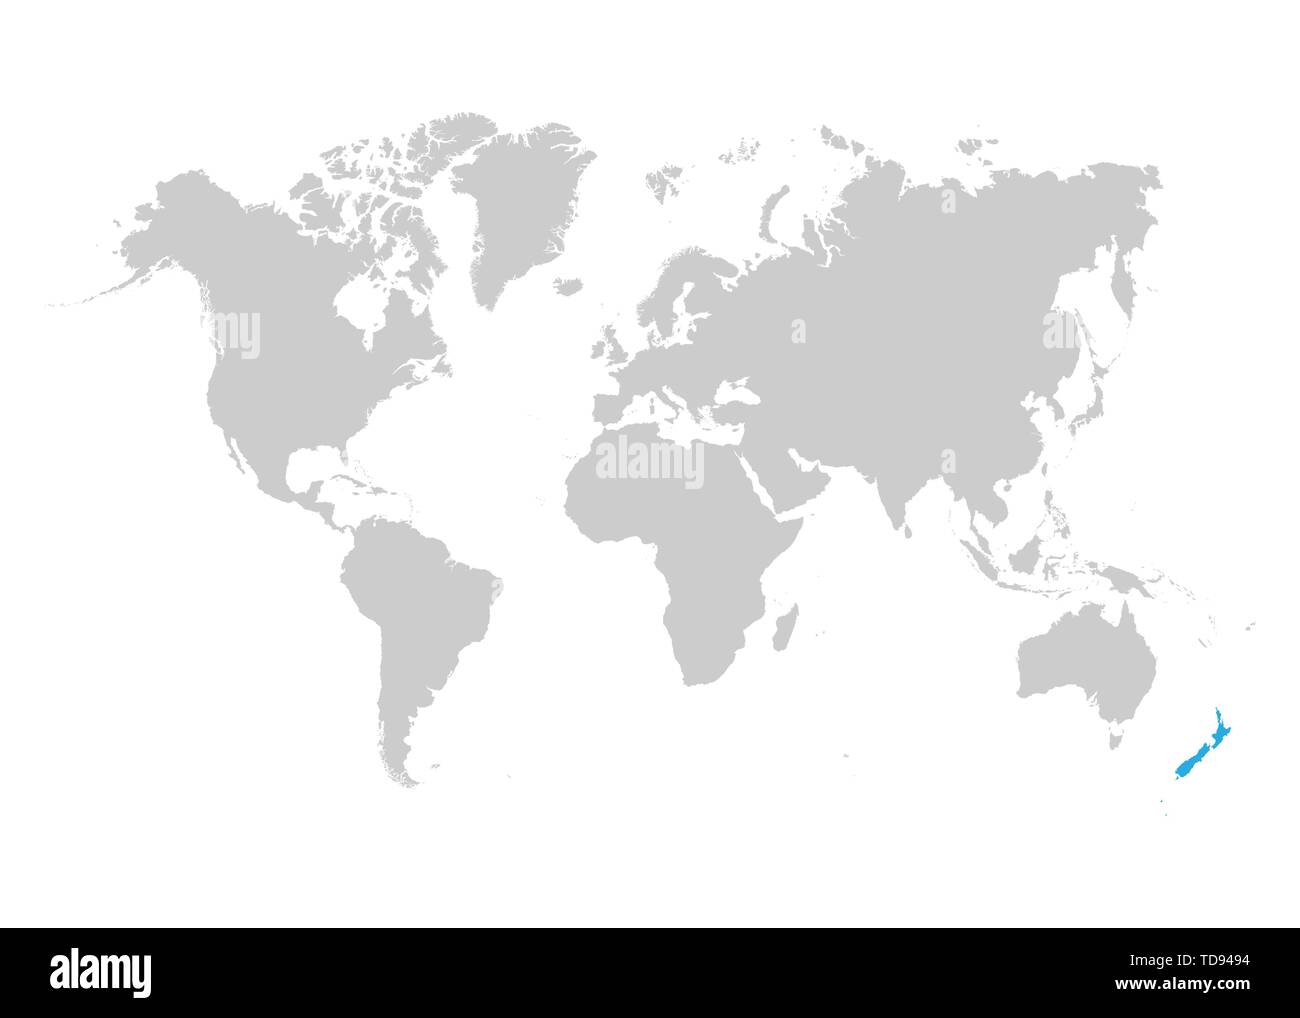 La mappa della Nuova Zelanda è evidenziata in blu sulla mappa del mondo Illustrazione Vettoriale